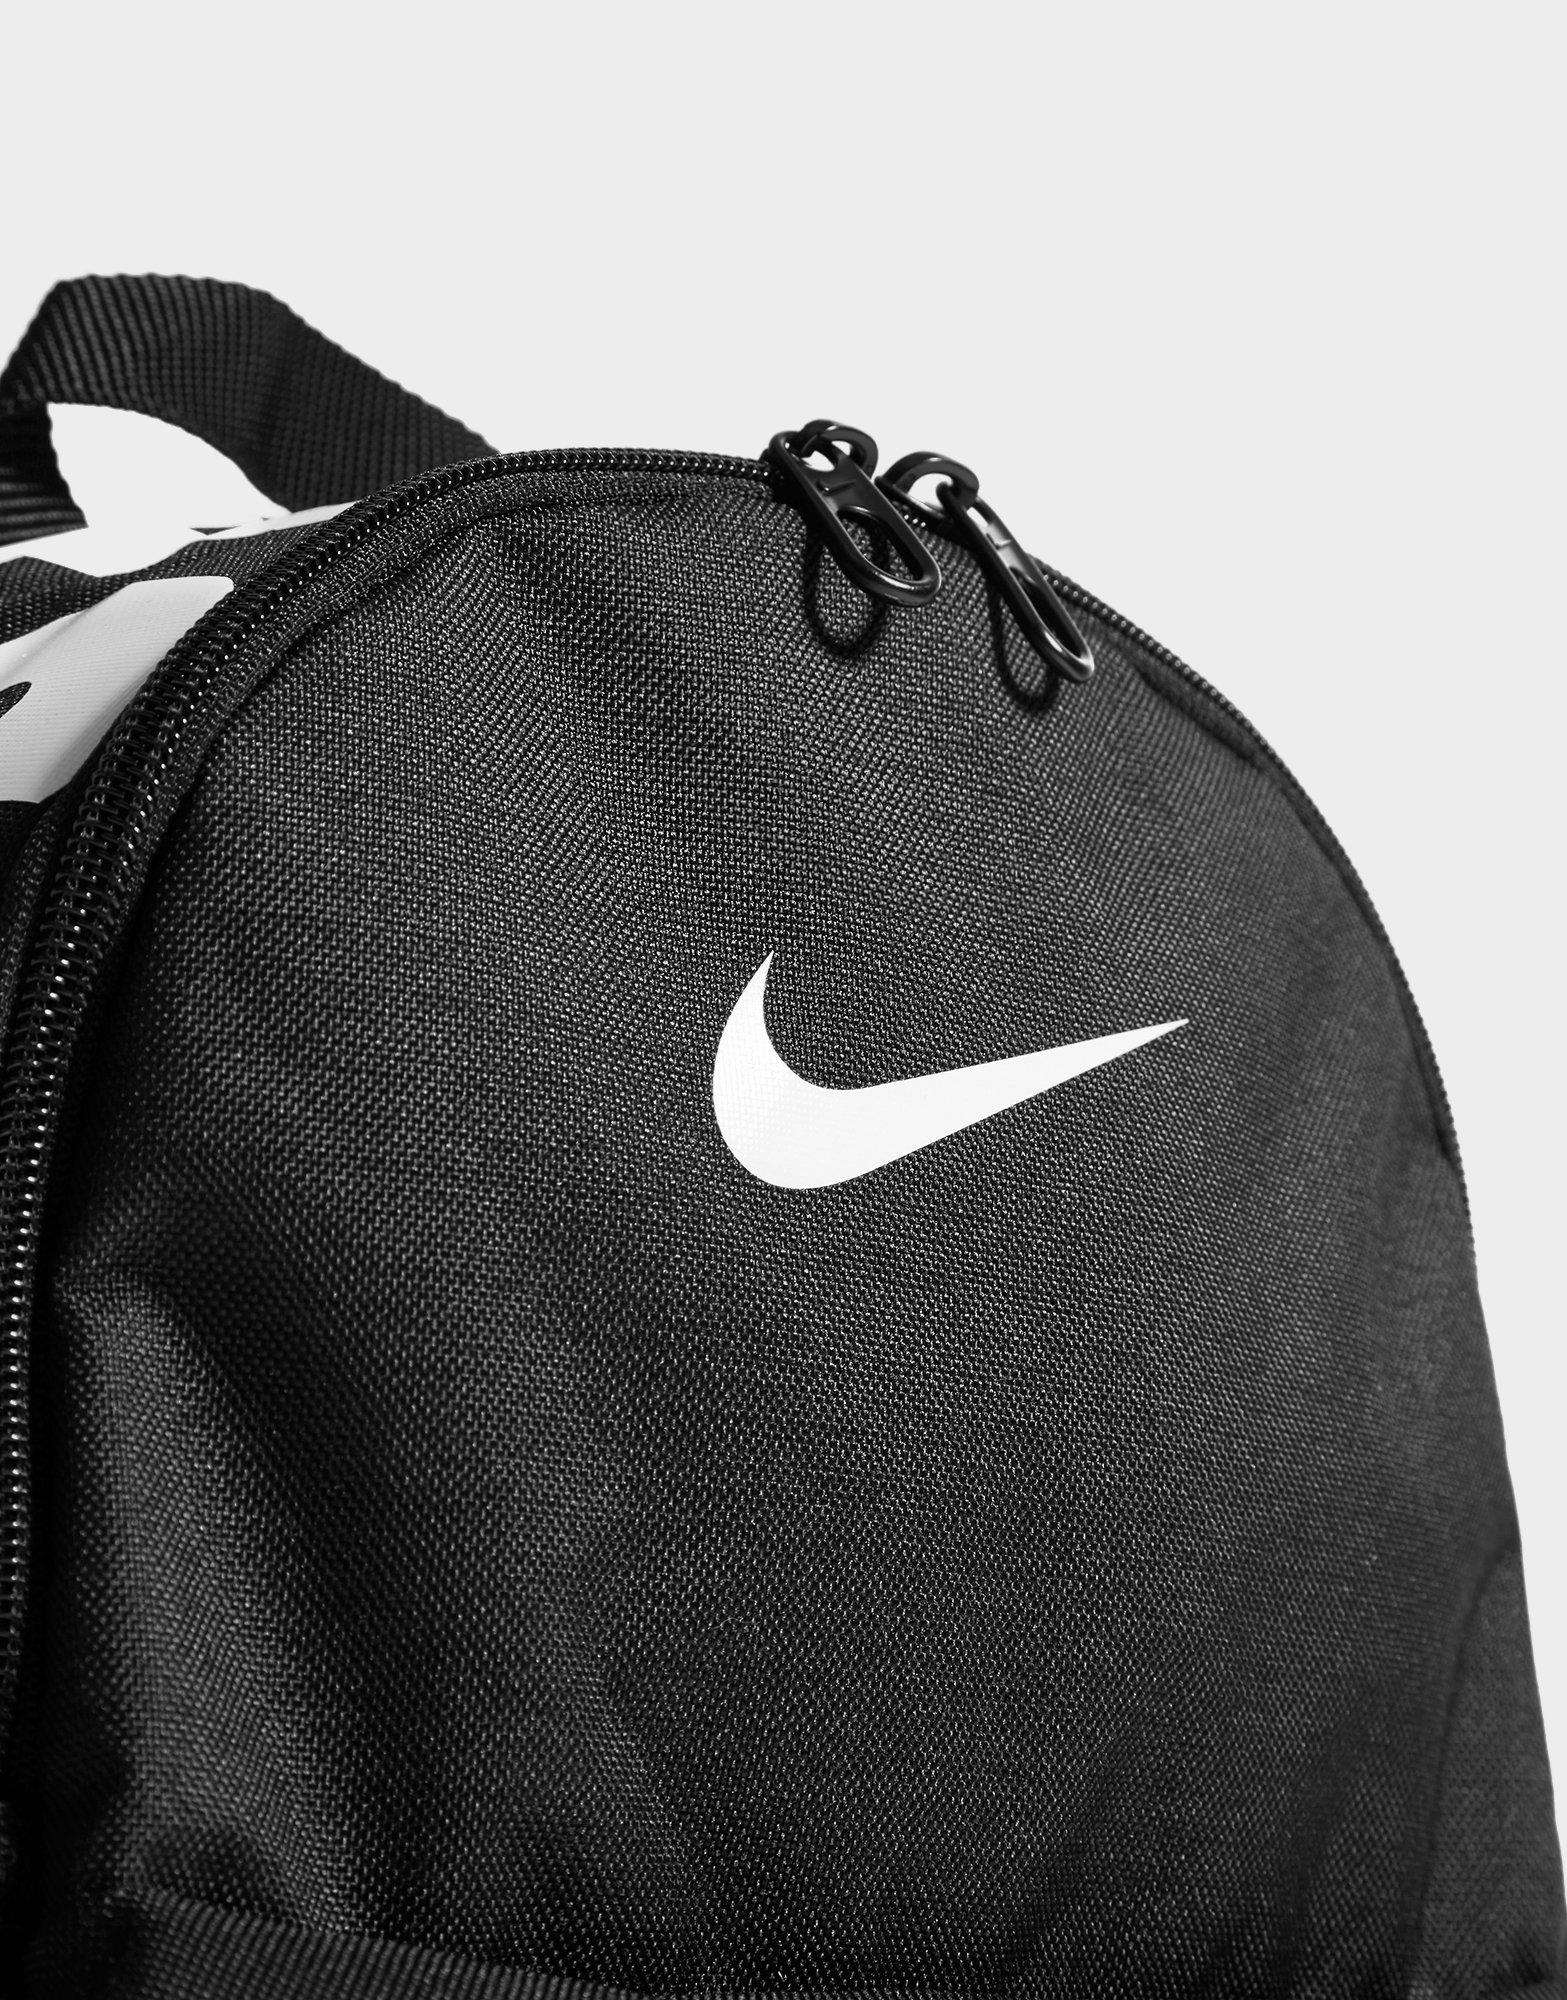 Black Nike Just Do It Mini Backpack 